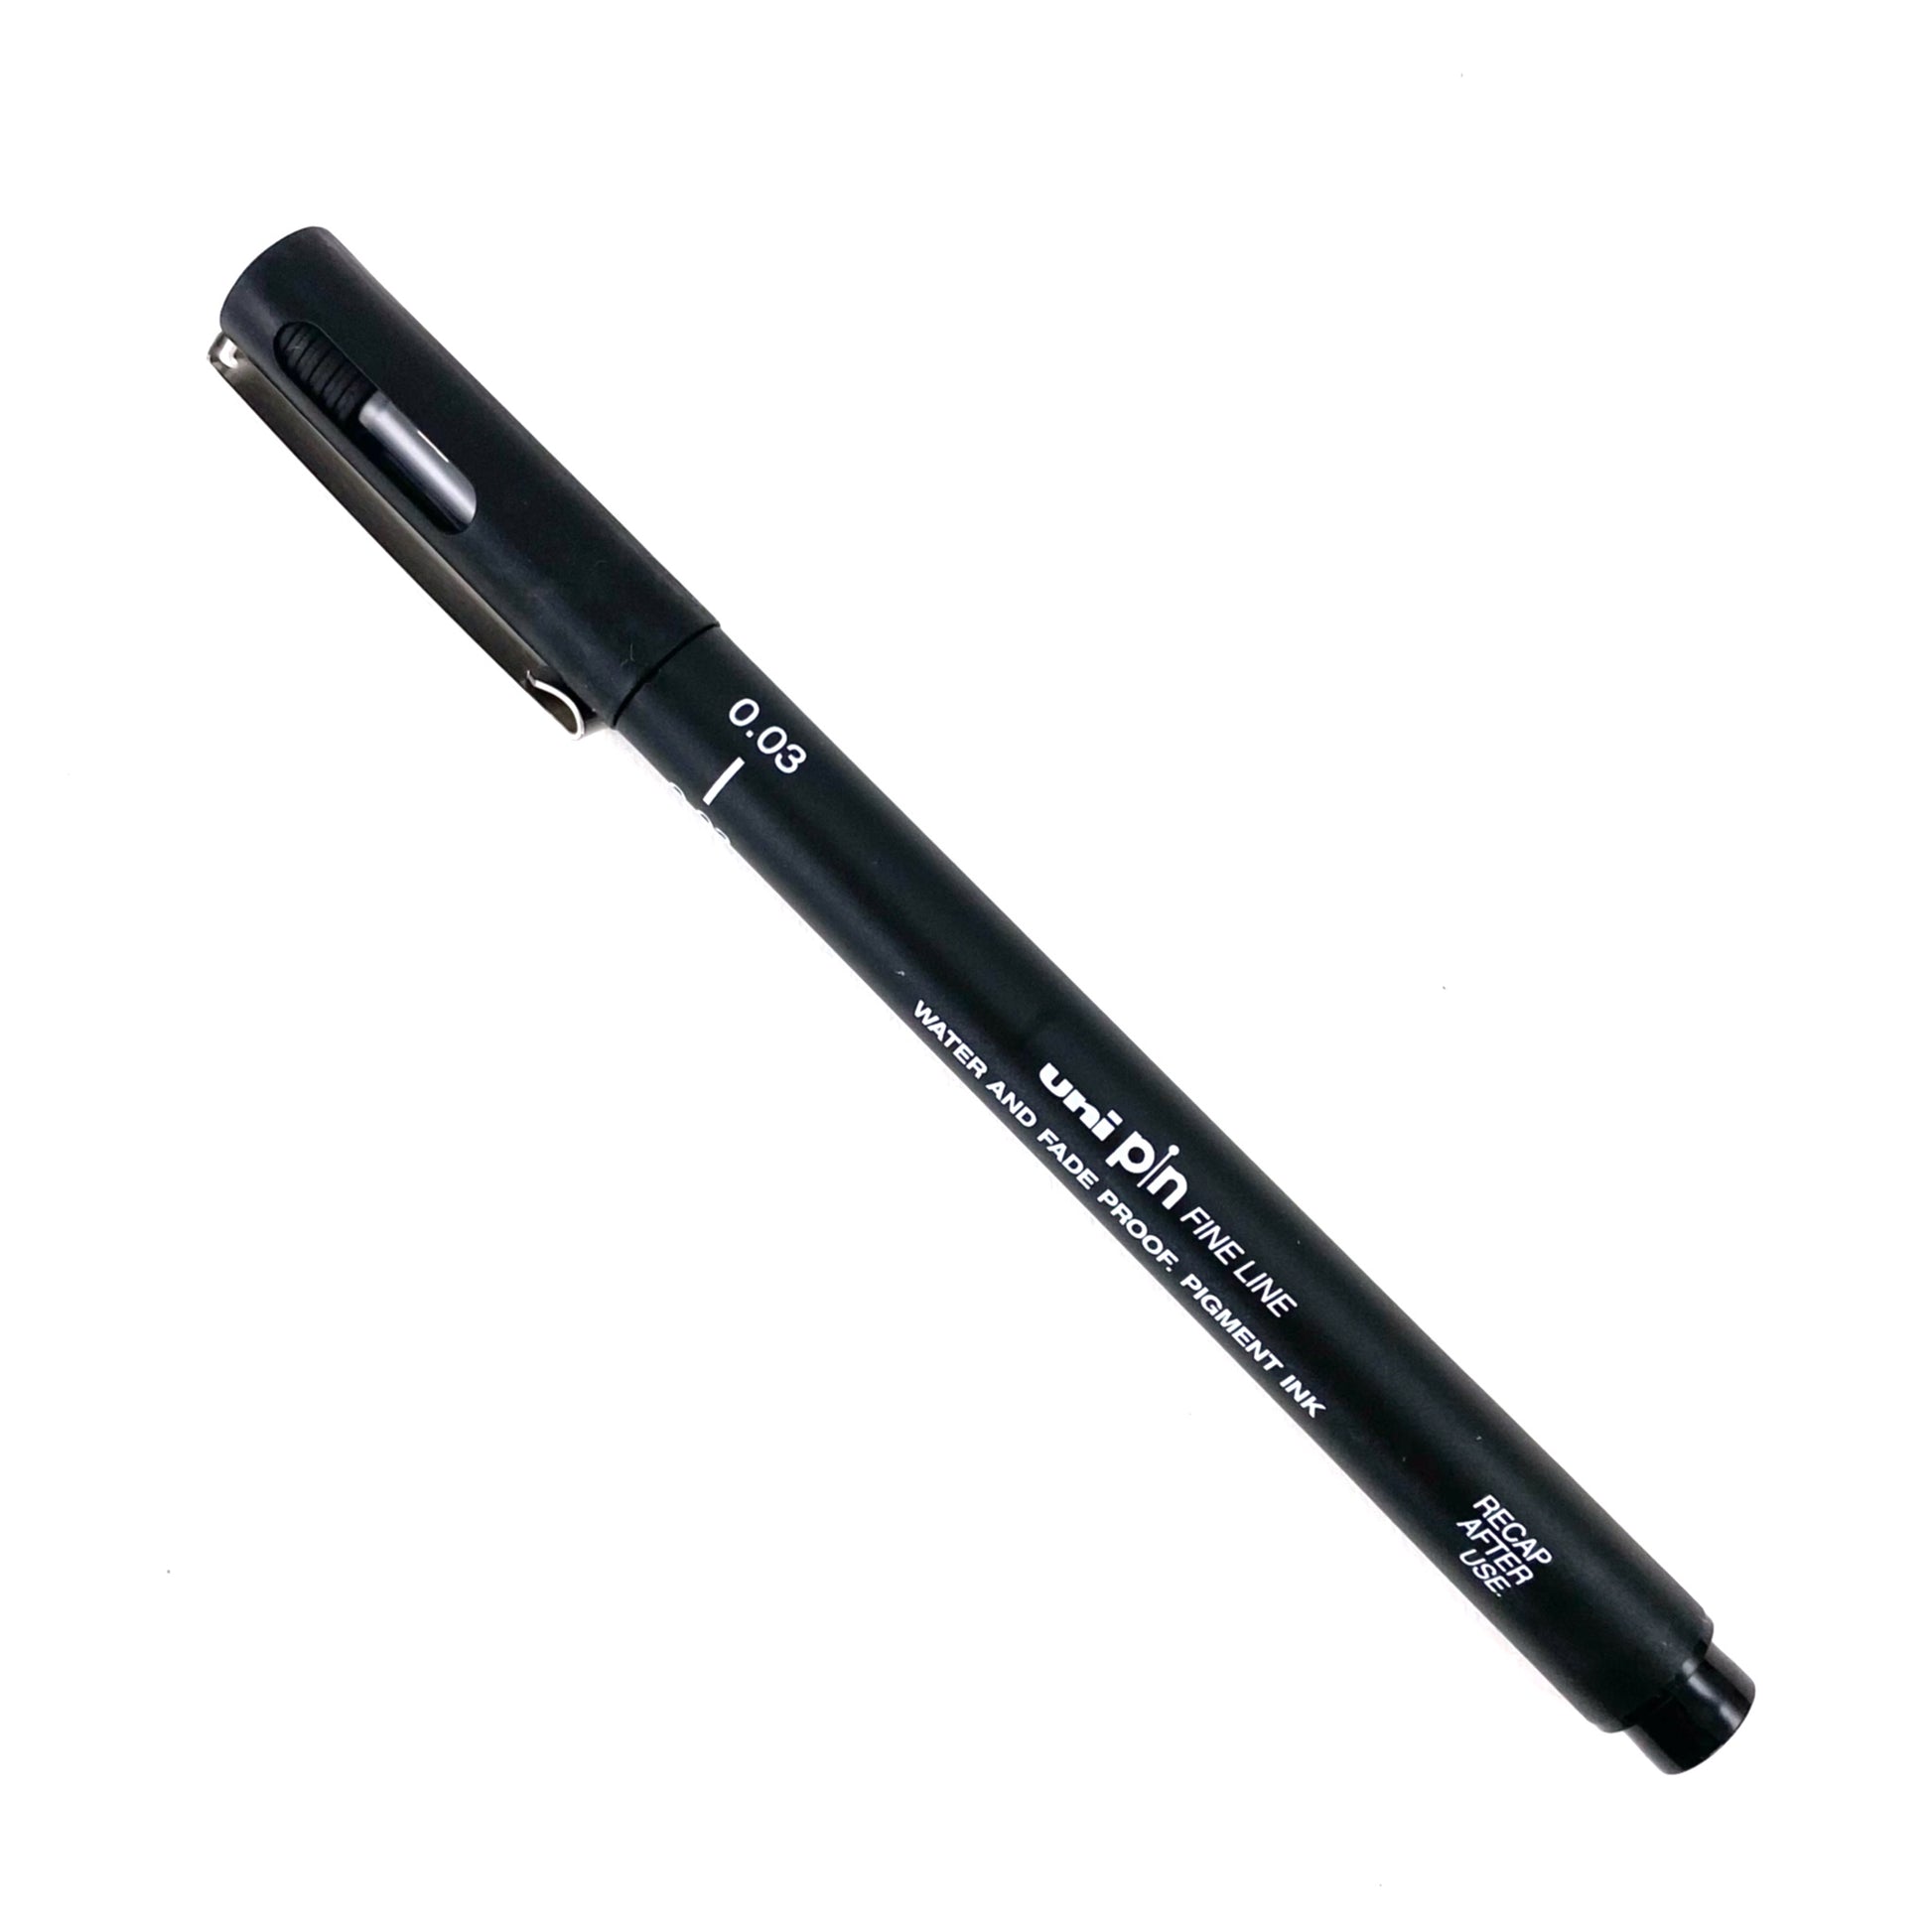 Uni Pin Fine Line Pens 12 Set, Black